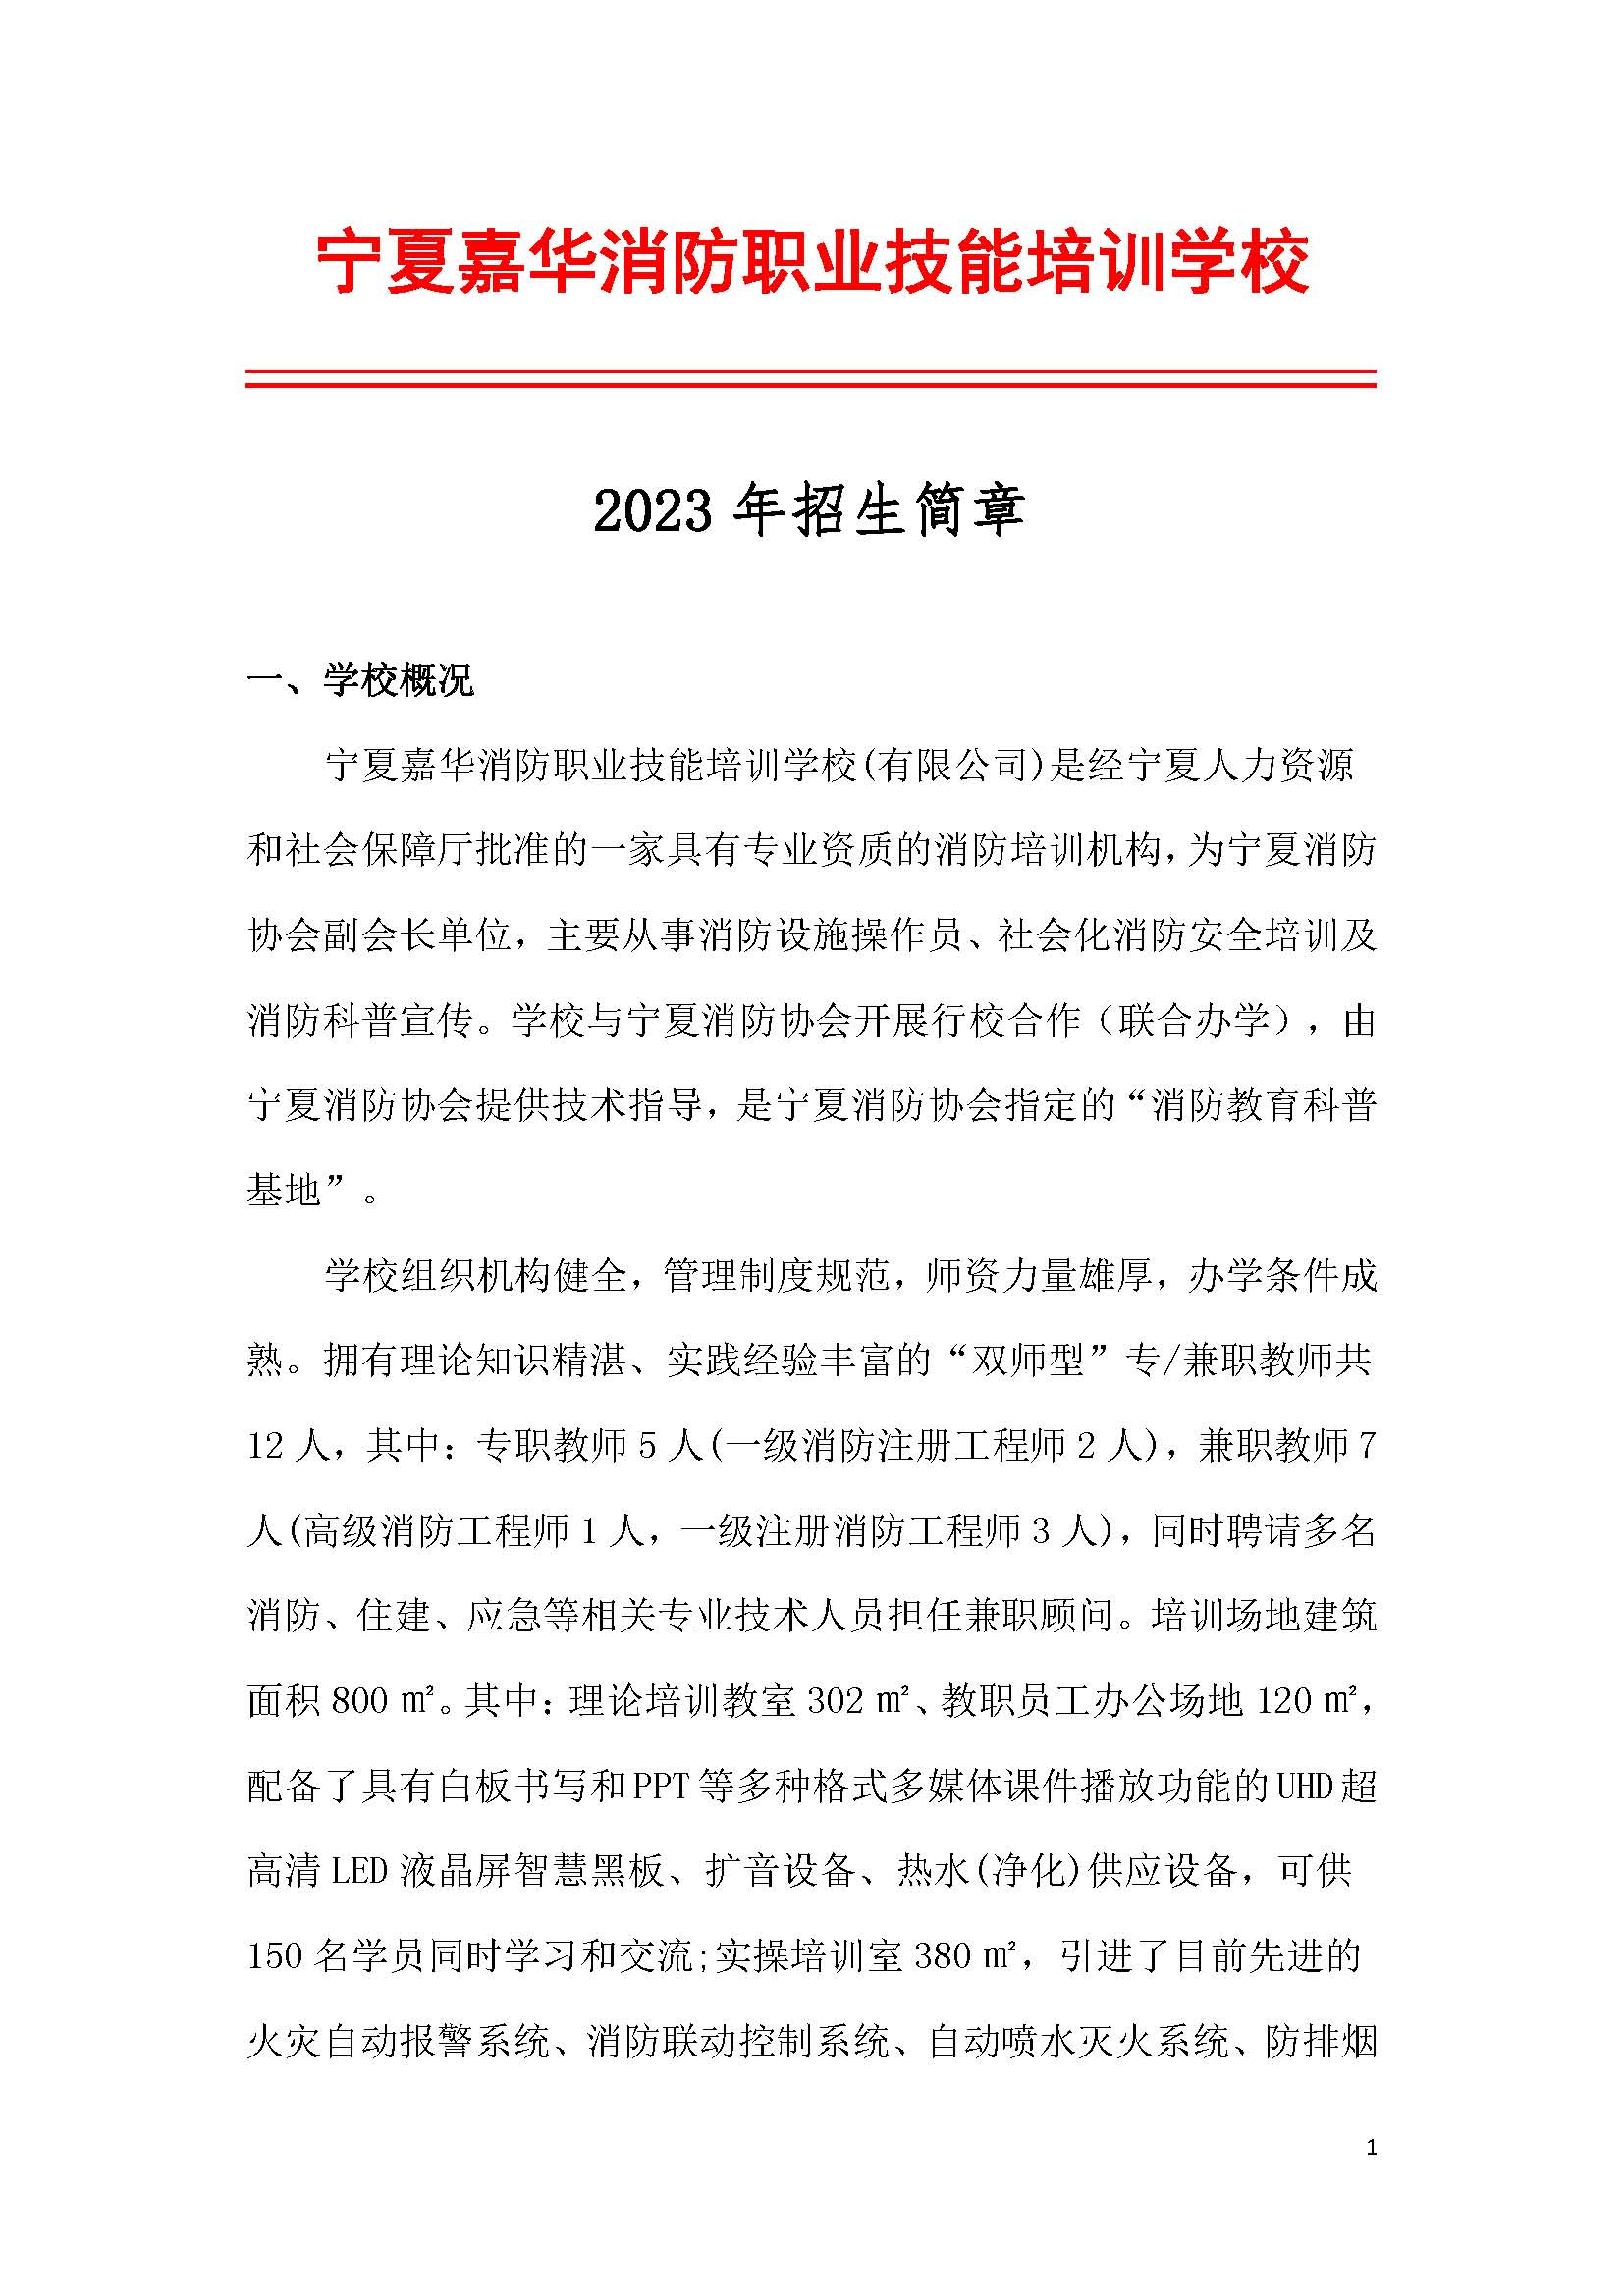 寧夏嘉華消防職業技能培訓學校2023年招生簡章